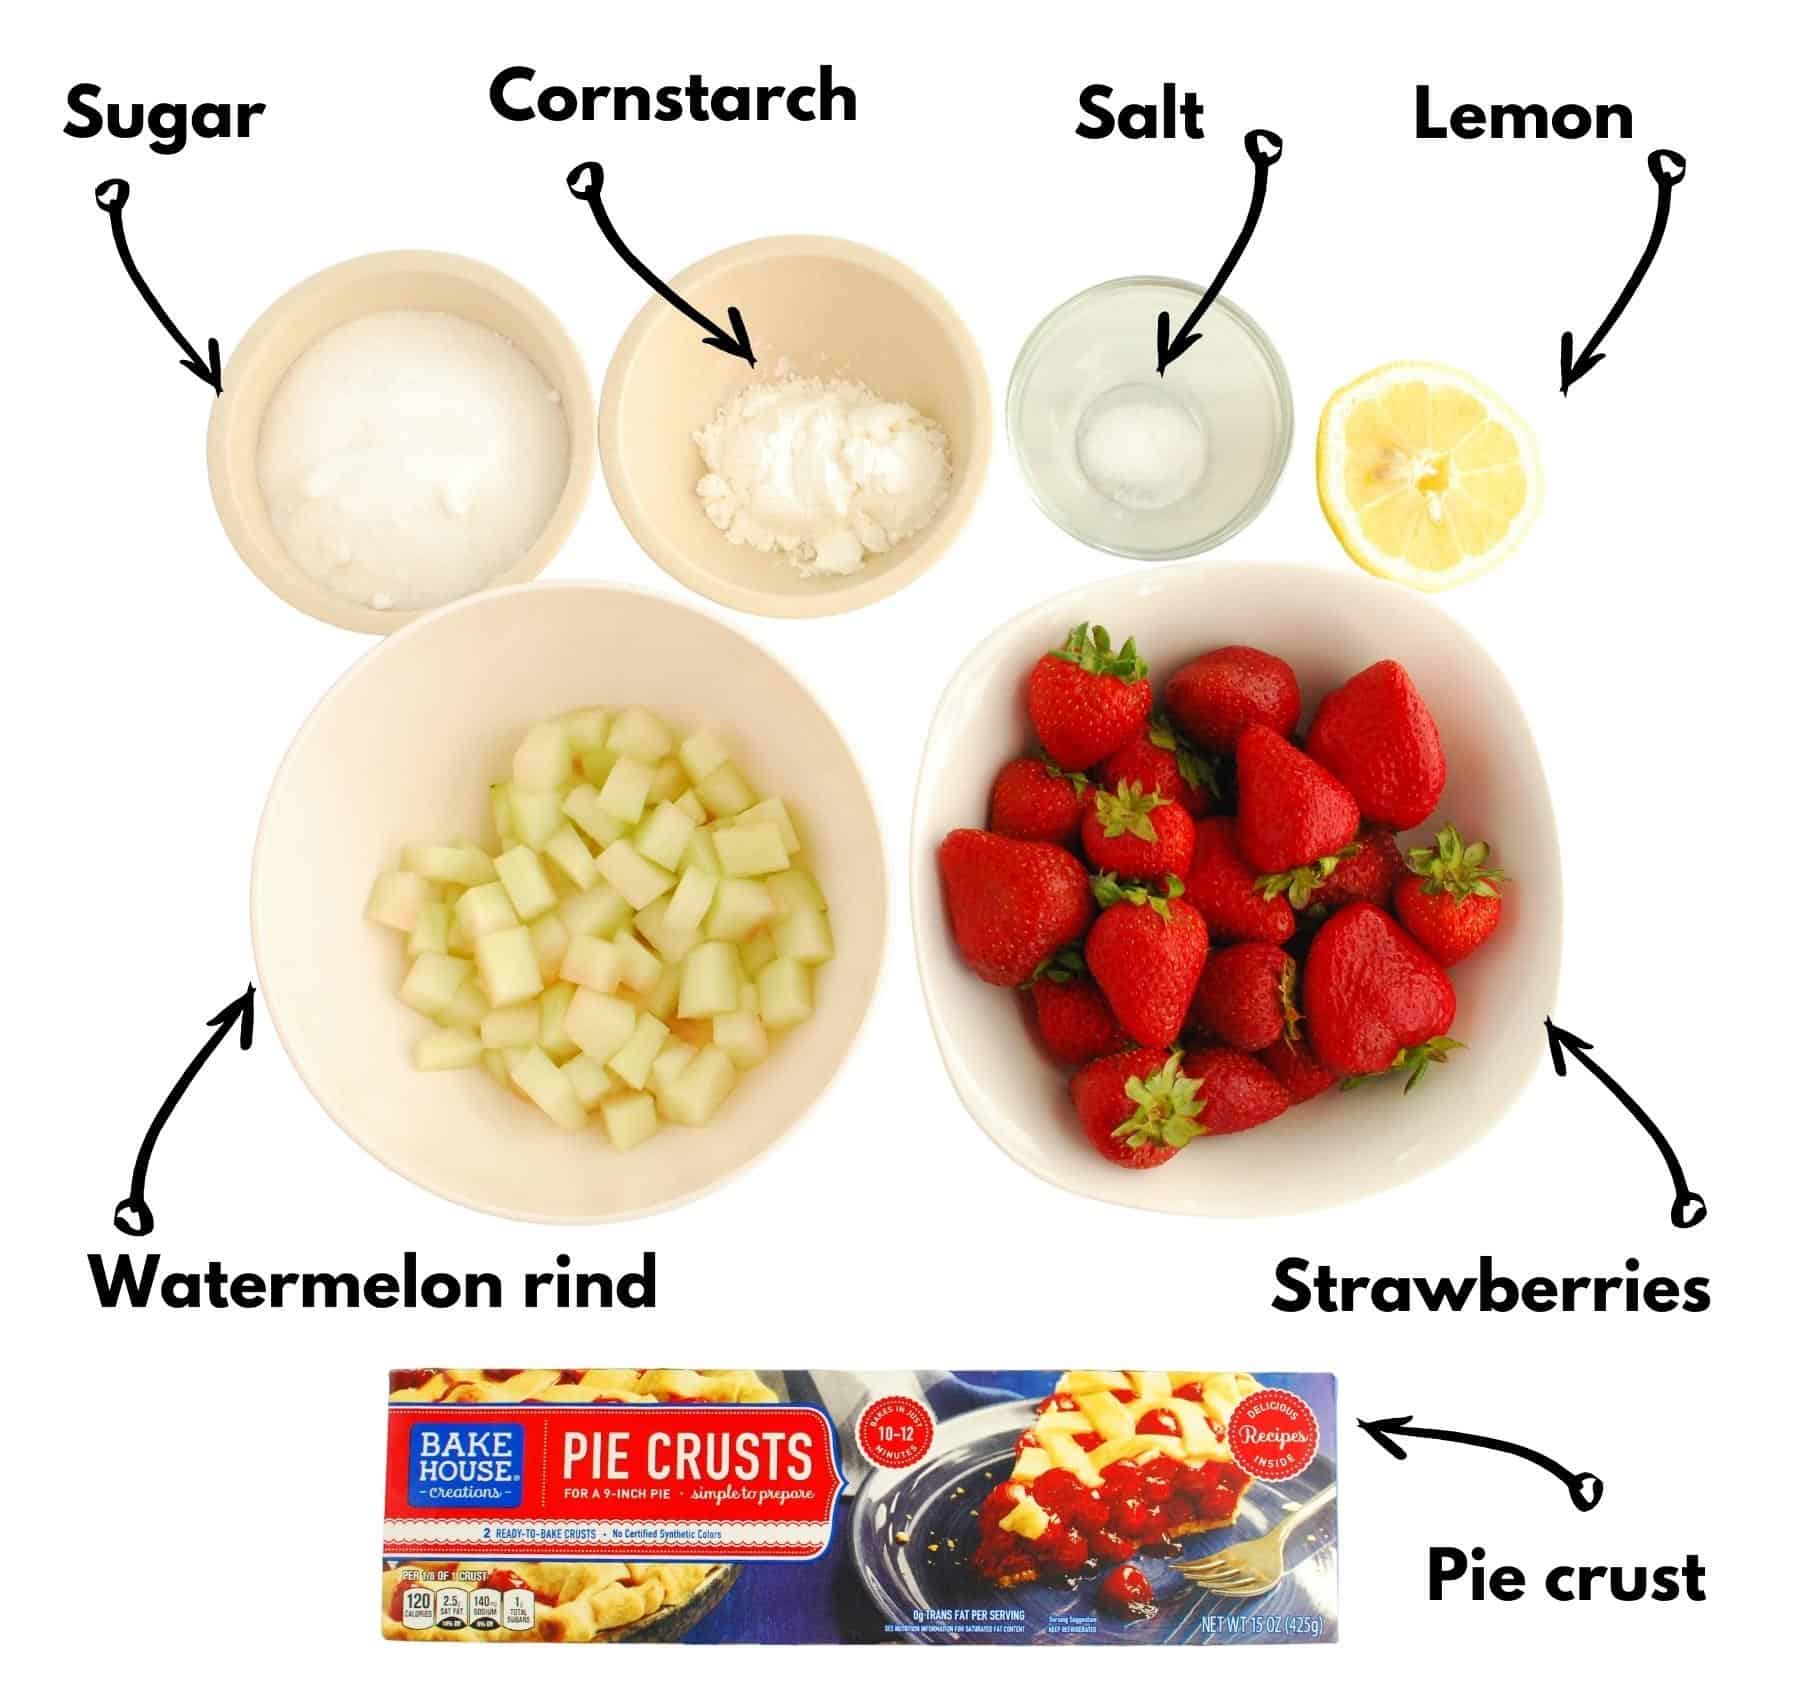 Pie crust, watermelon rind, strawberries, sugar, cornstarch, salt, and lemon.